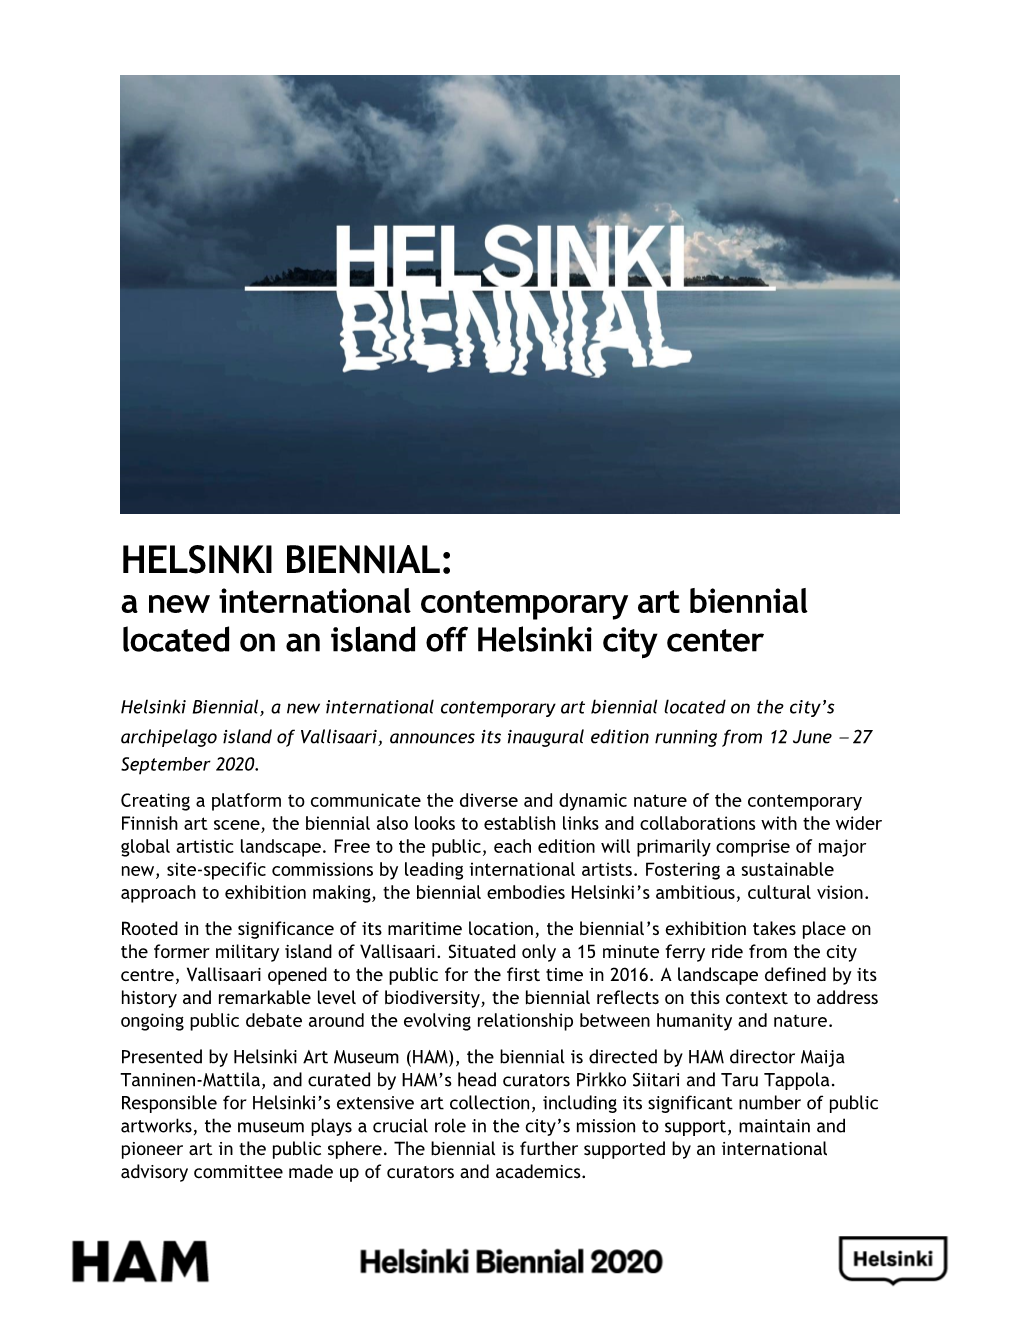 HELSINKI BIENNIAL: a New International Contemporary Art Biennial Located on an Island Off Helsinki City Center